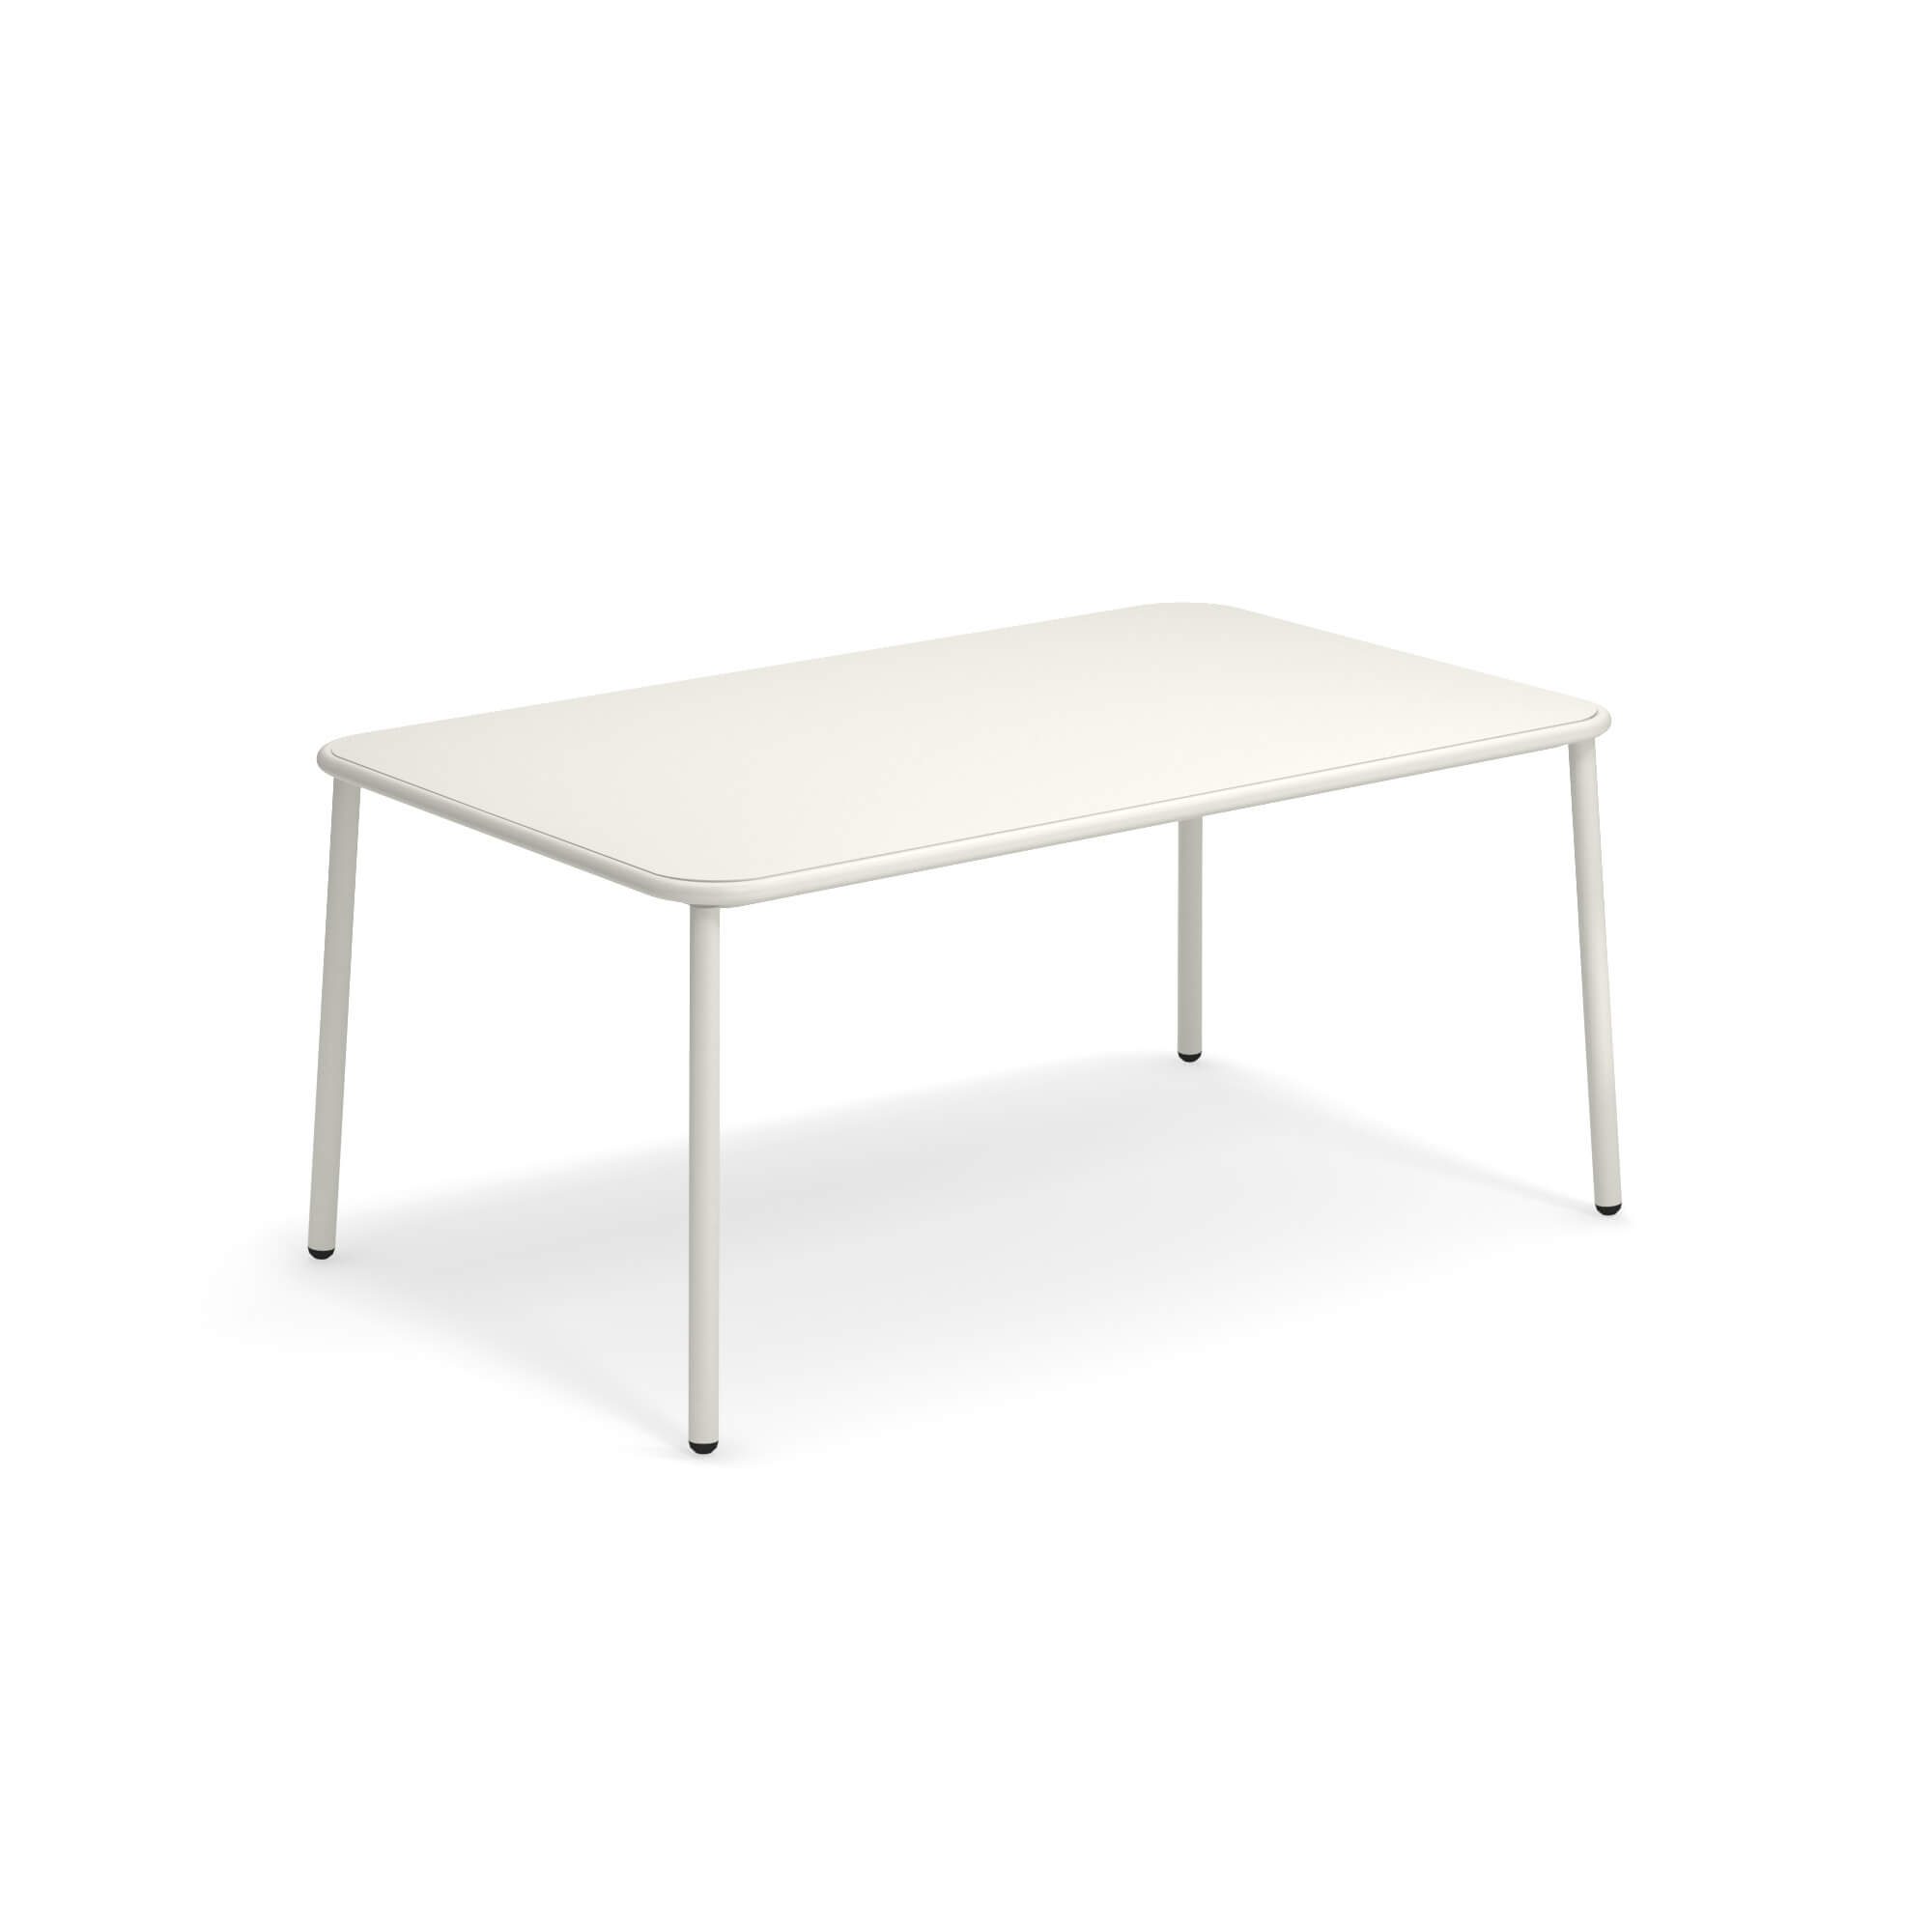 Gartentisch Edelstahl Einzigartig Emu Tisch Rechteckig Tischplatte Aluminium 160×97 5 Yard Weiß